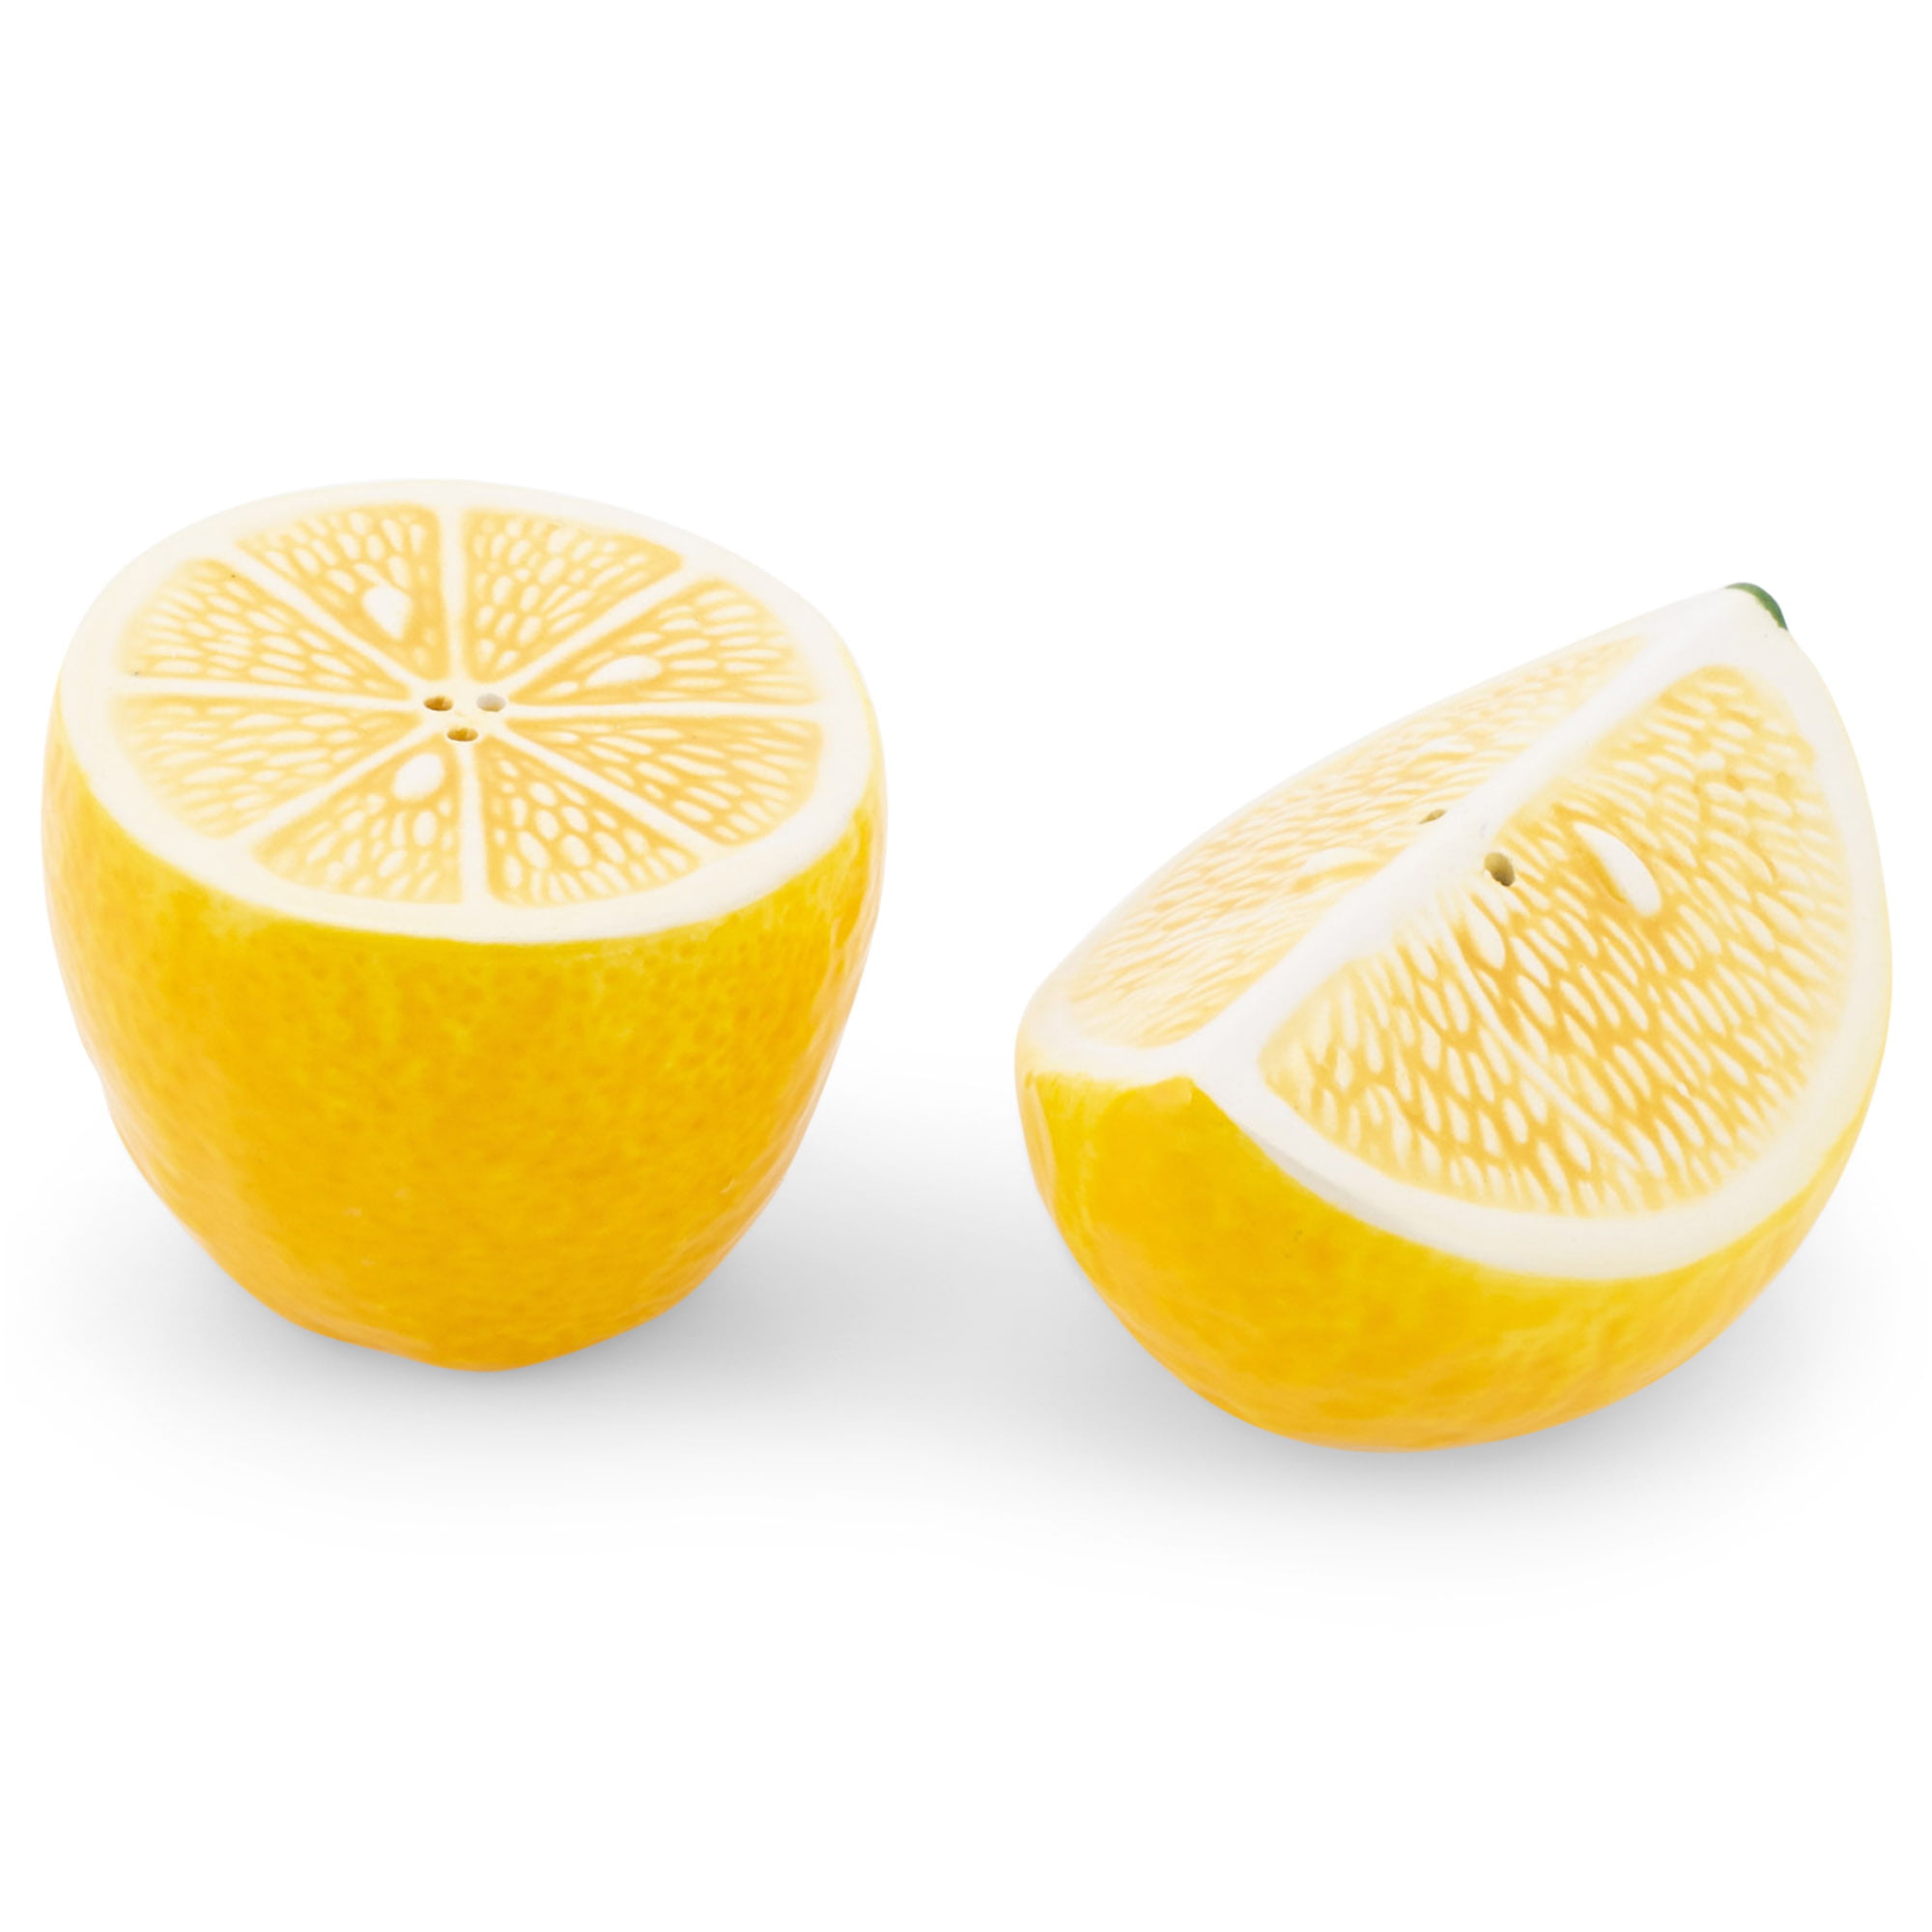 Sunshine Yellow Lemon Halves 3 x 2 Dolomite Tabletop Salt and Pepper Shaker Set 